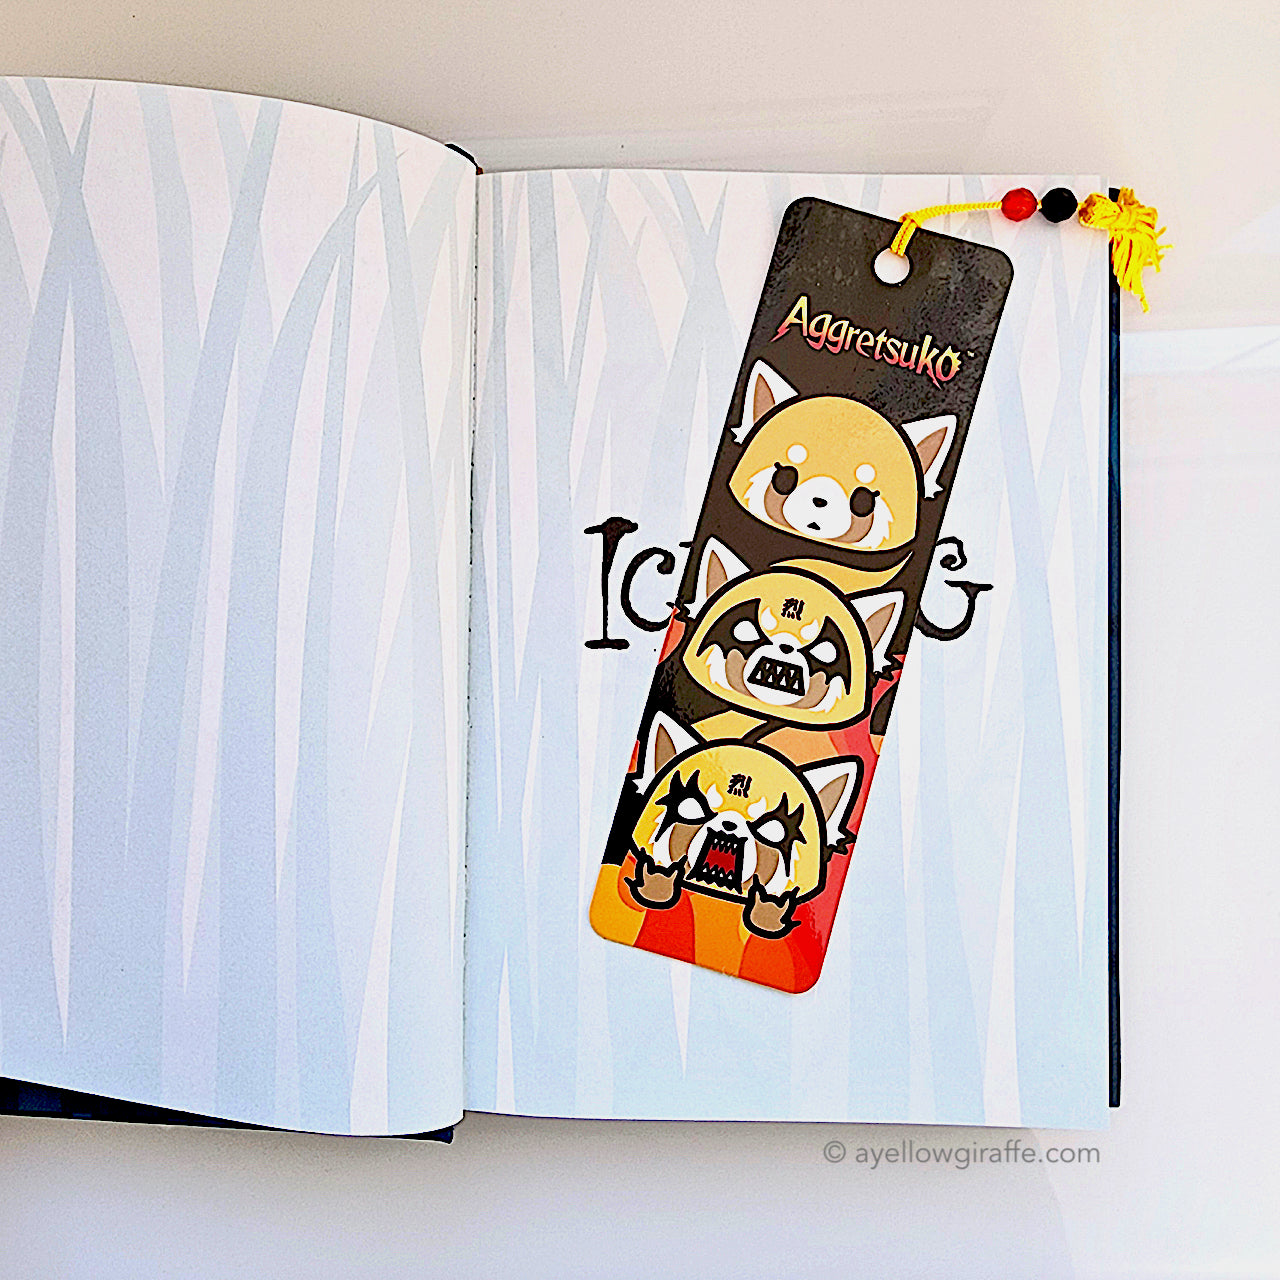 Aggrestuko bookmark inside book